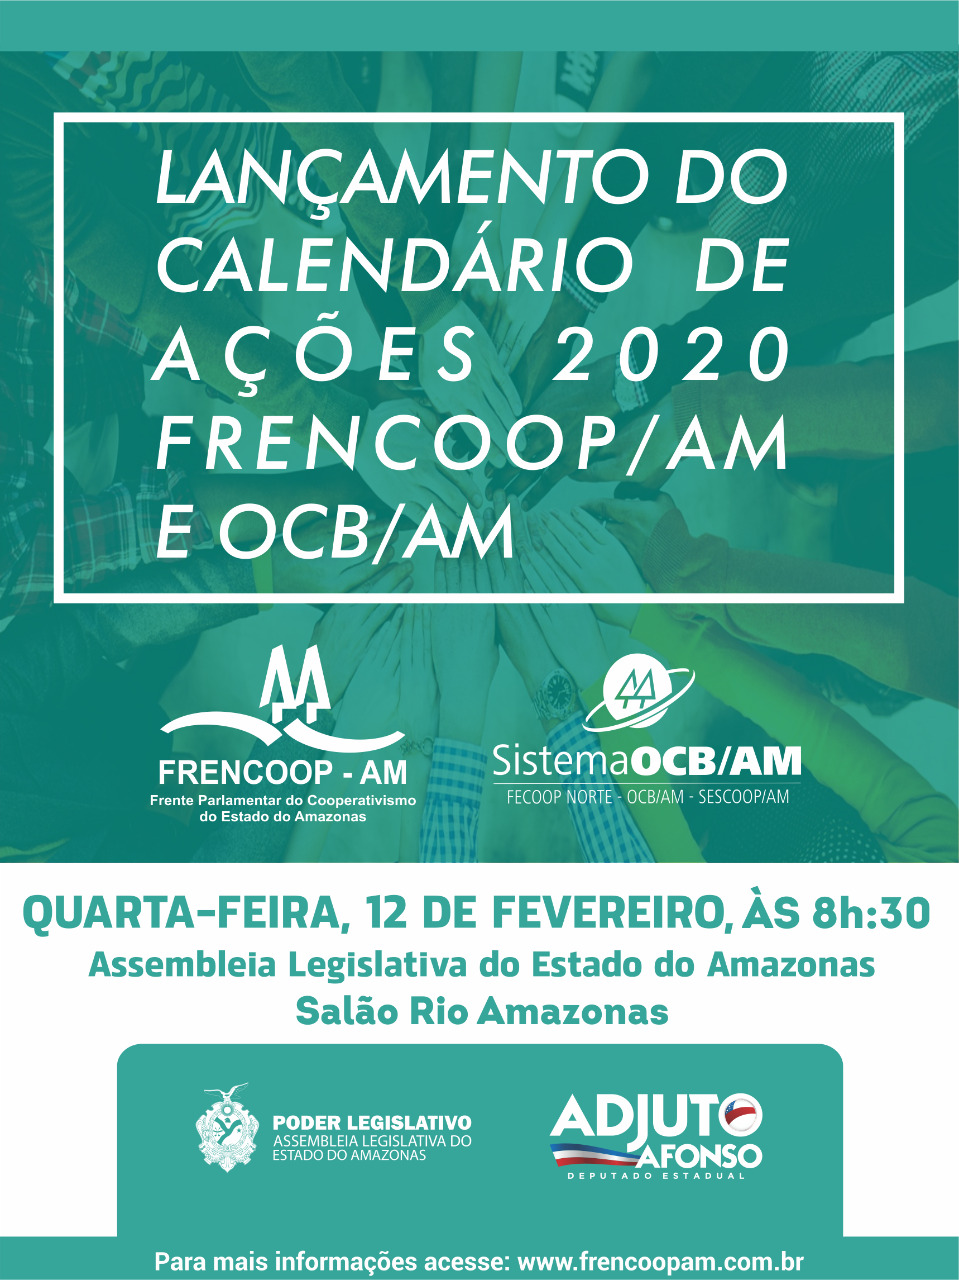 Barcelos participa do Lançamento do calendário de ações 2020 Frencoop AM e OCB AM